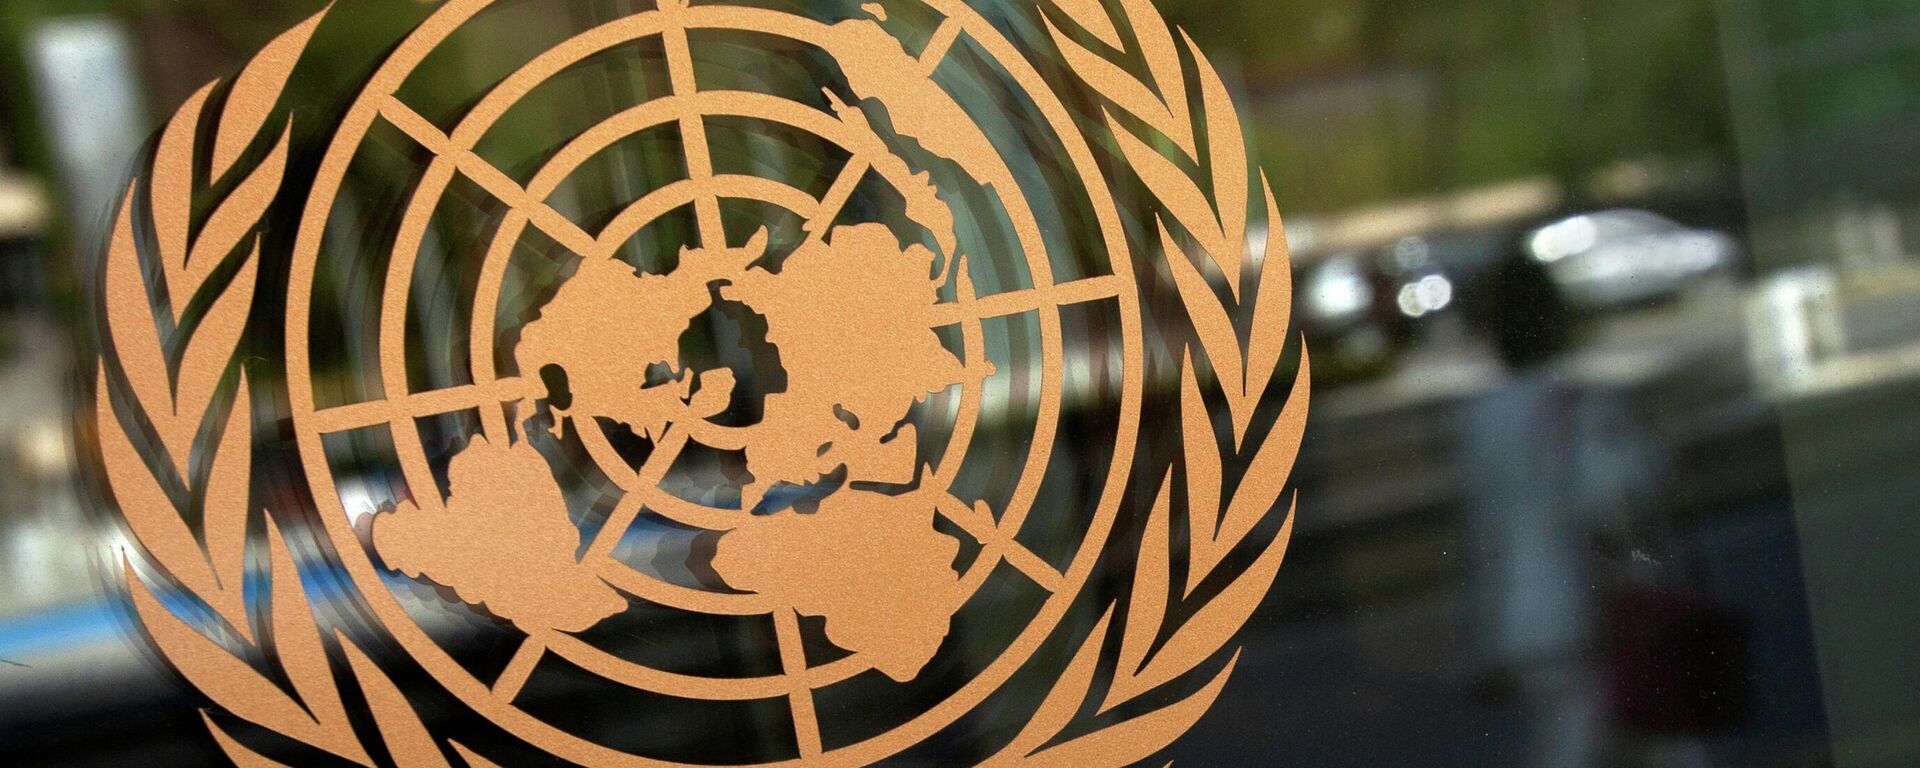 El logo de la ONU - Sputnik Mundo, 1920, 20.10.2021